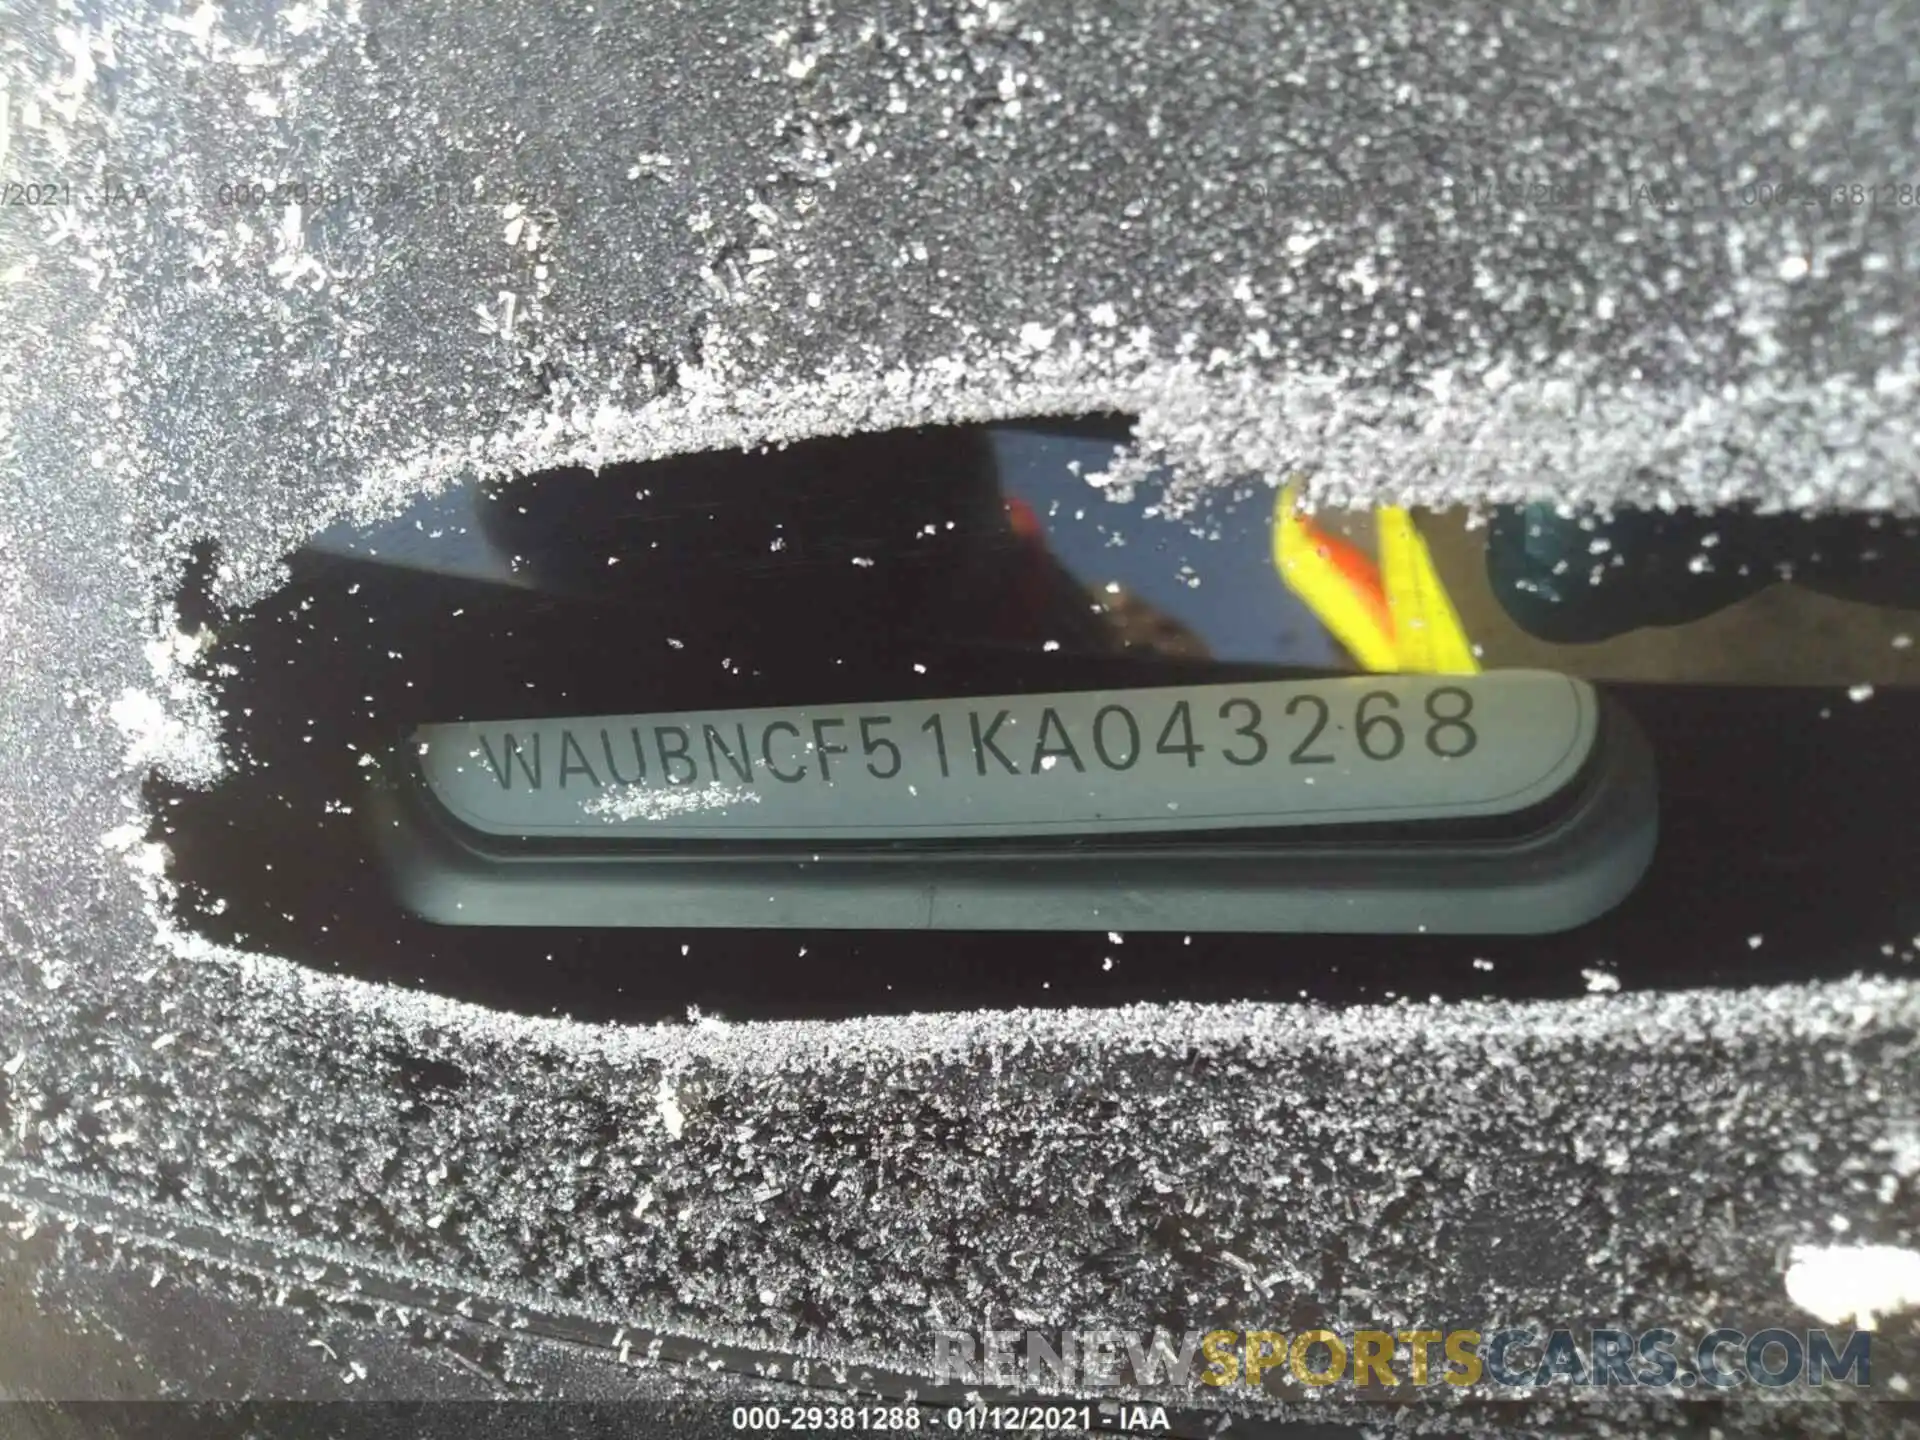 9 Фотография поврежденного автомобиля WAUBNCF51KA043268 AUDI A5 SPORTBACK 2019